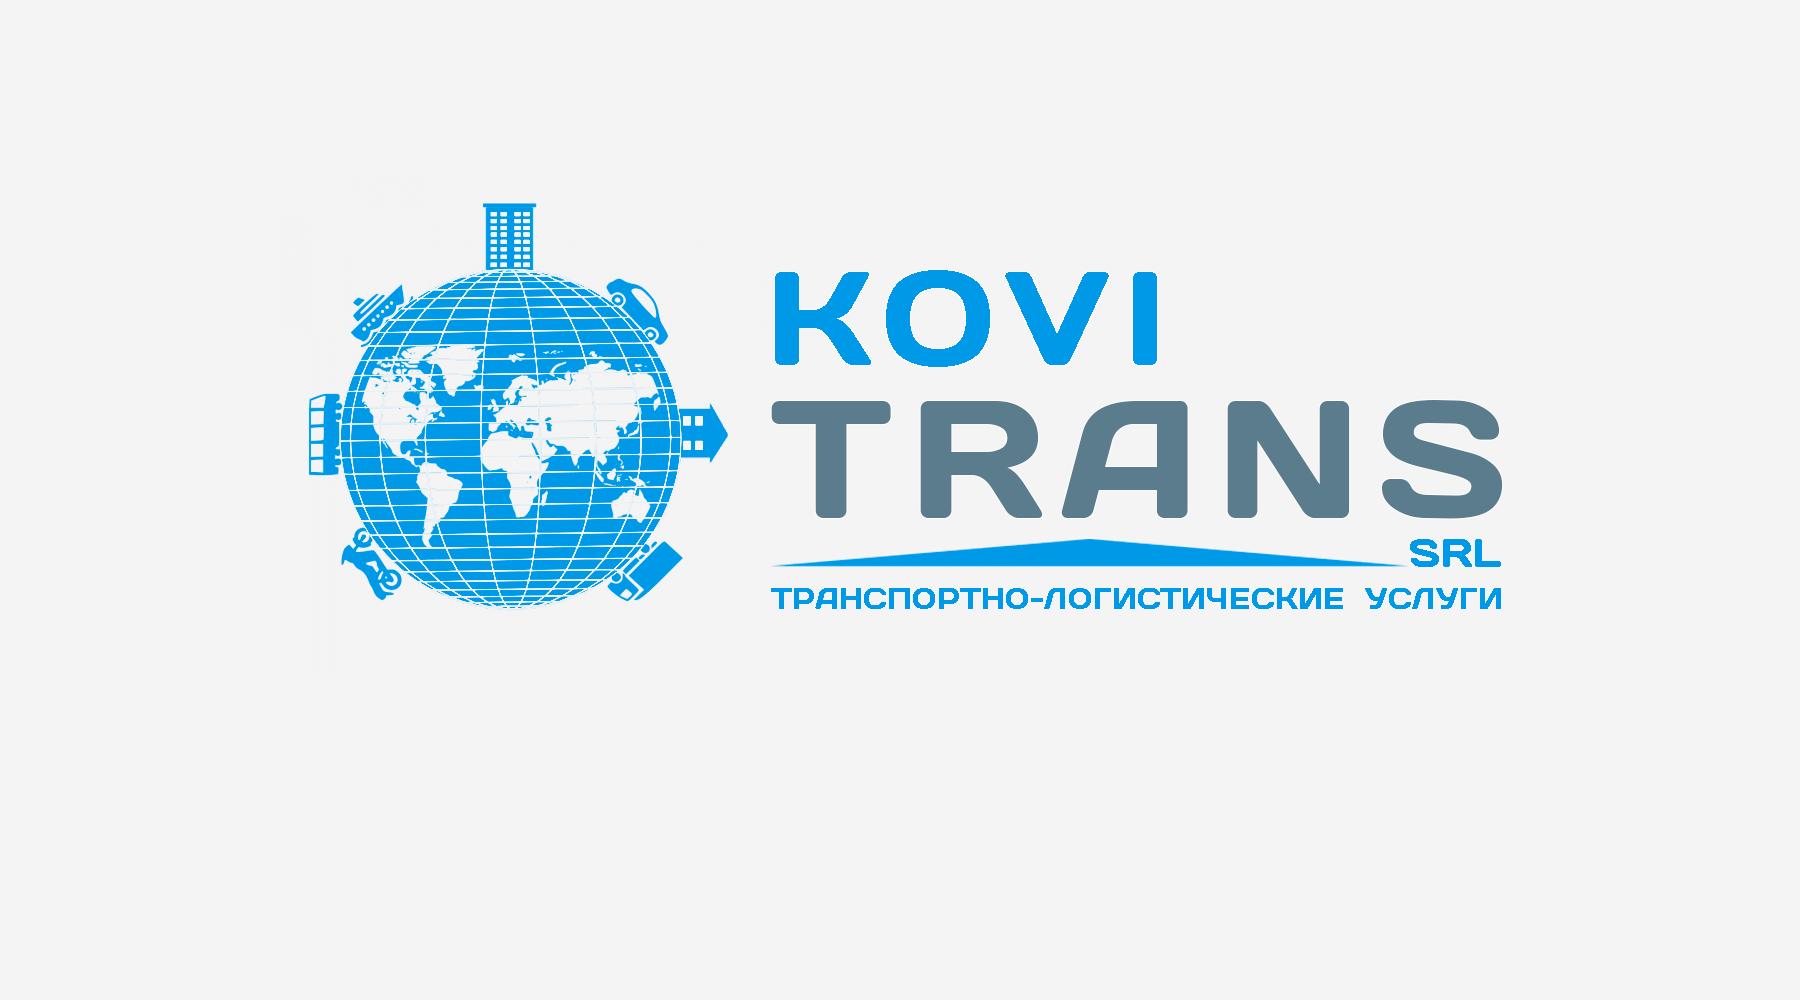 Фирмы кишинева. "Exim Trans" логотип. Логистические компании Молдовы. Логотип транспортно логистической компании. Kovi Trans SRL отзывы.